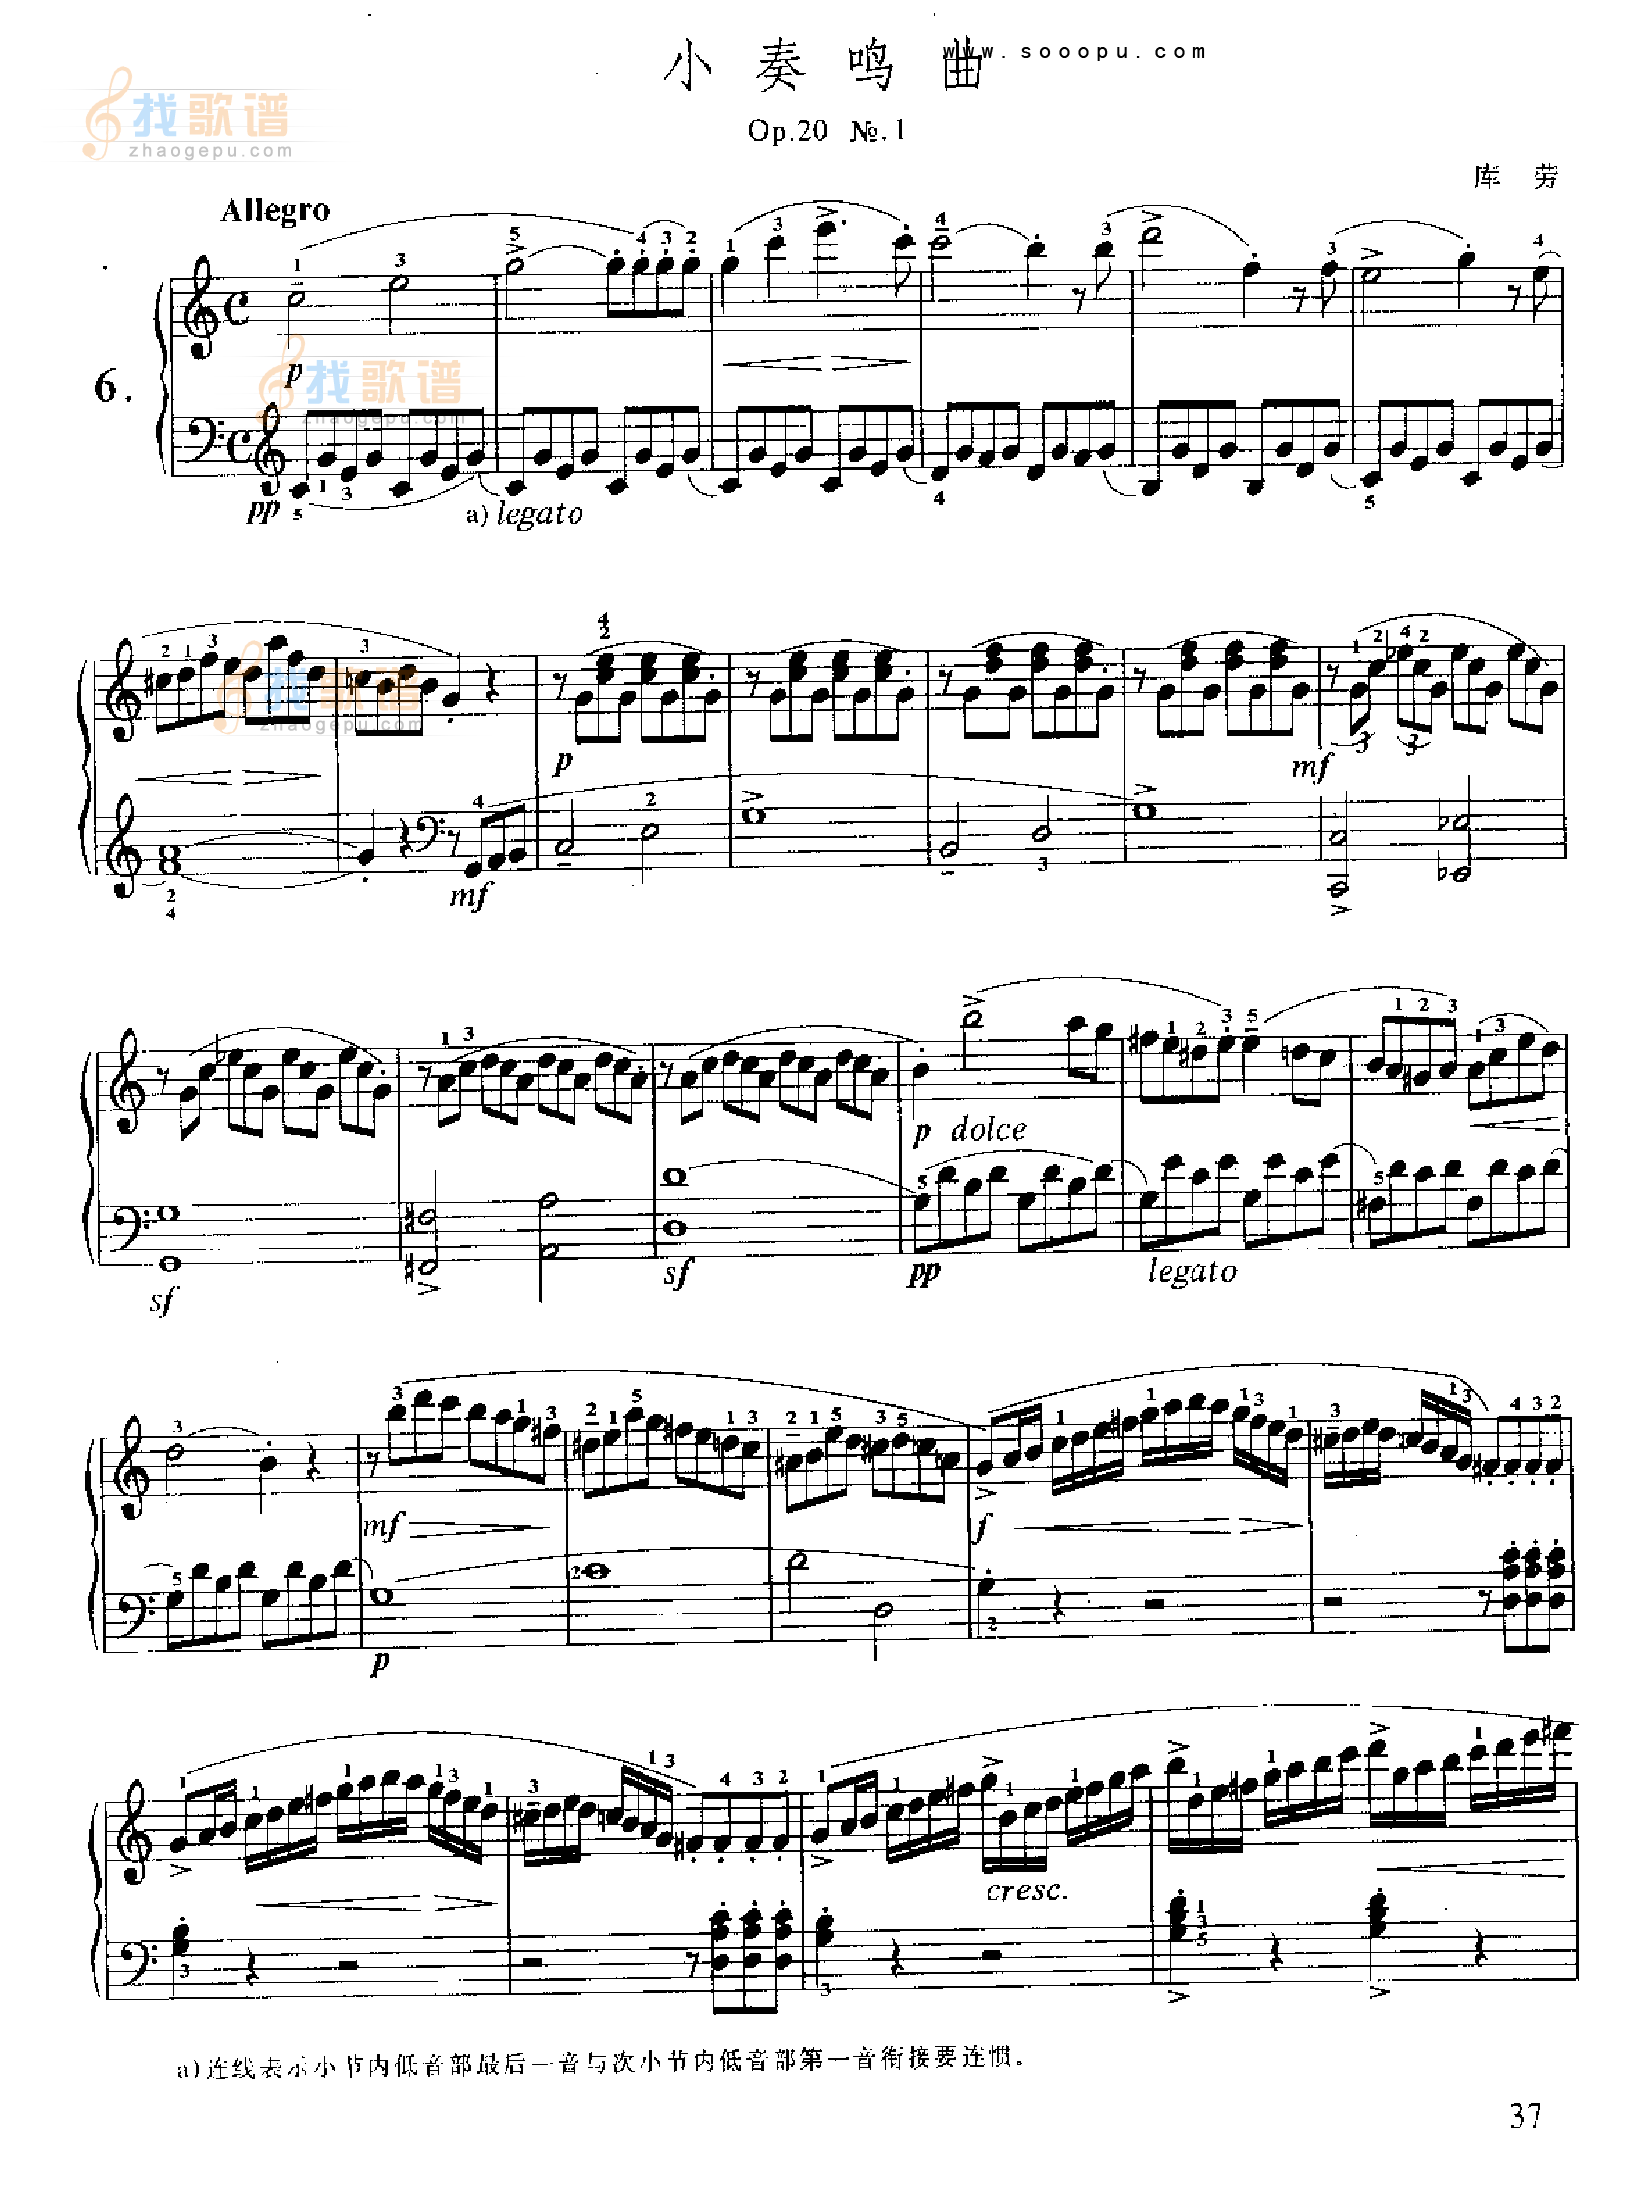 小奏鸣曲(Op.20 No.1)